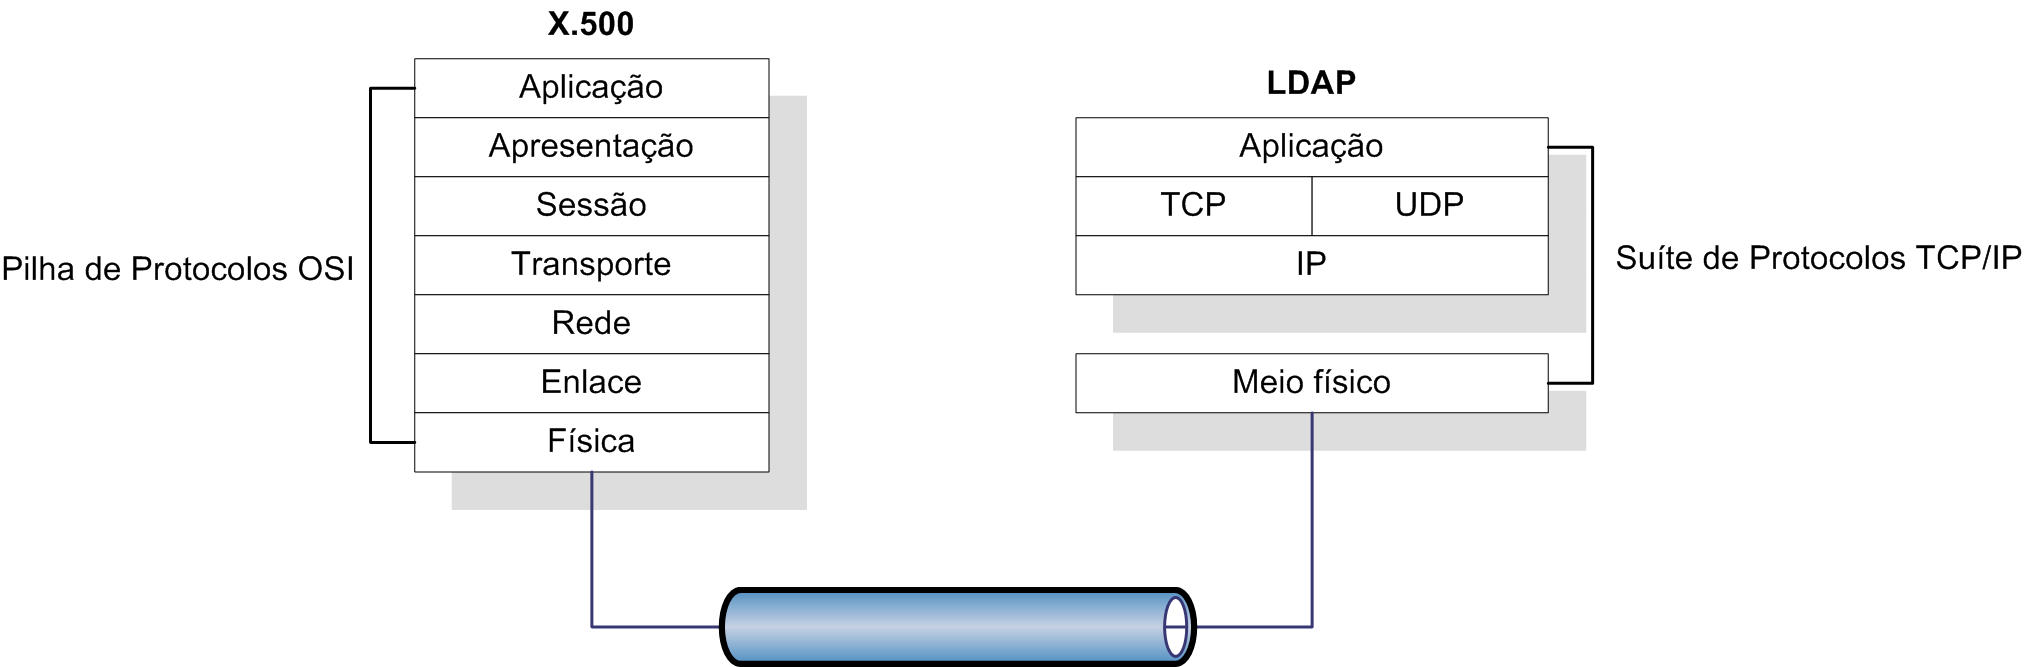 X.500 sobre OSI vs. LDAP sobre TCP/IP